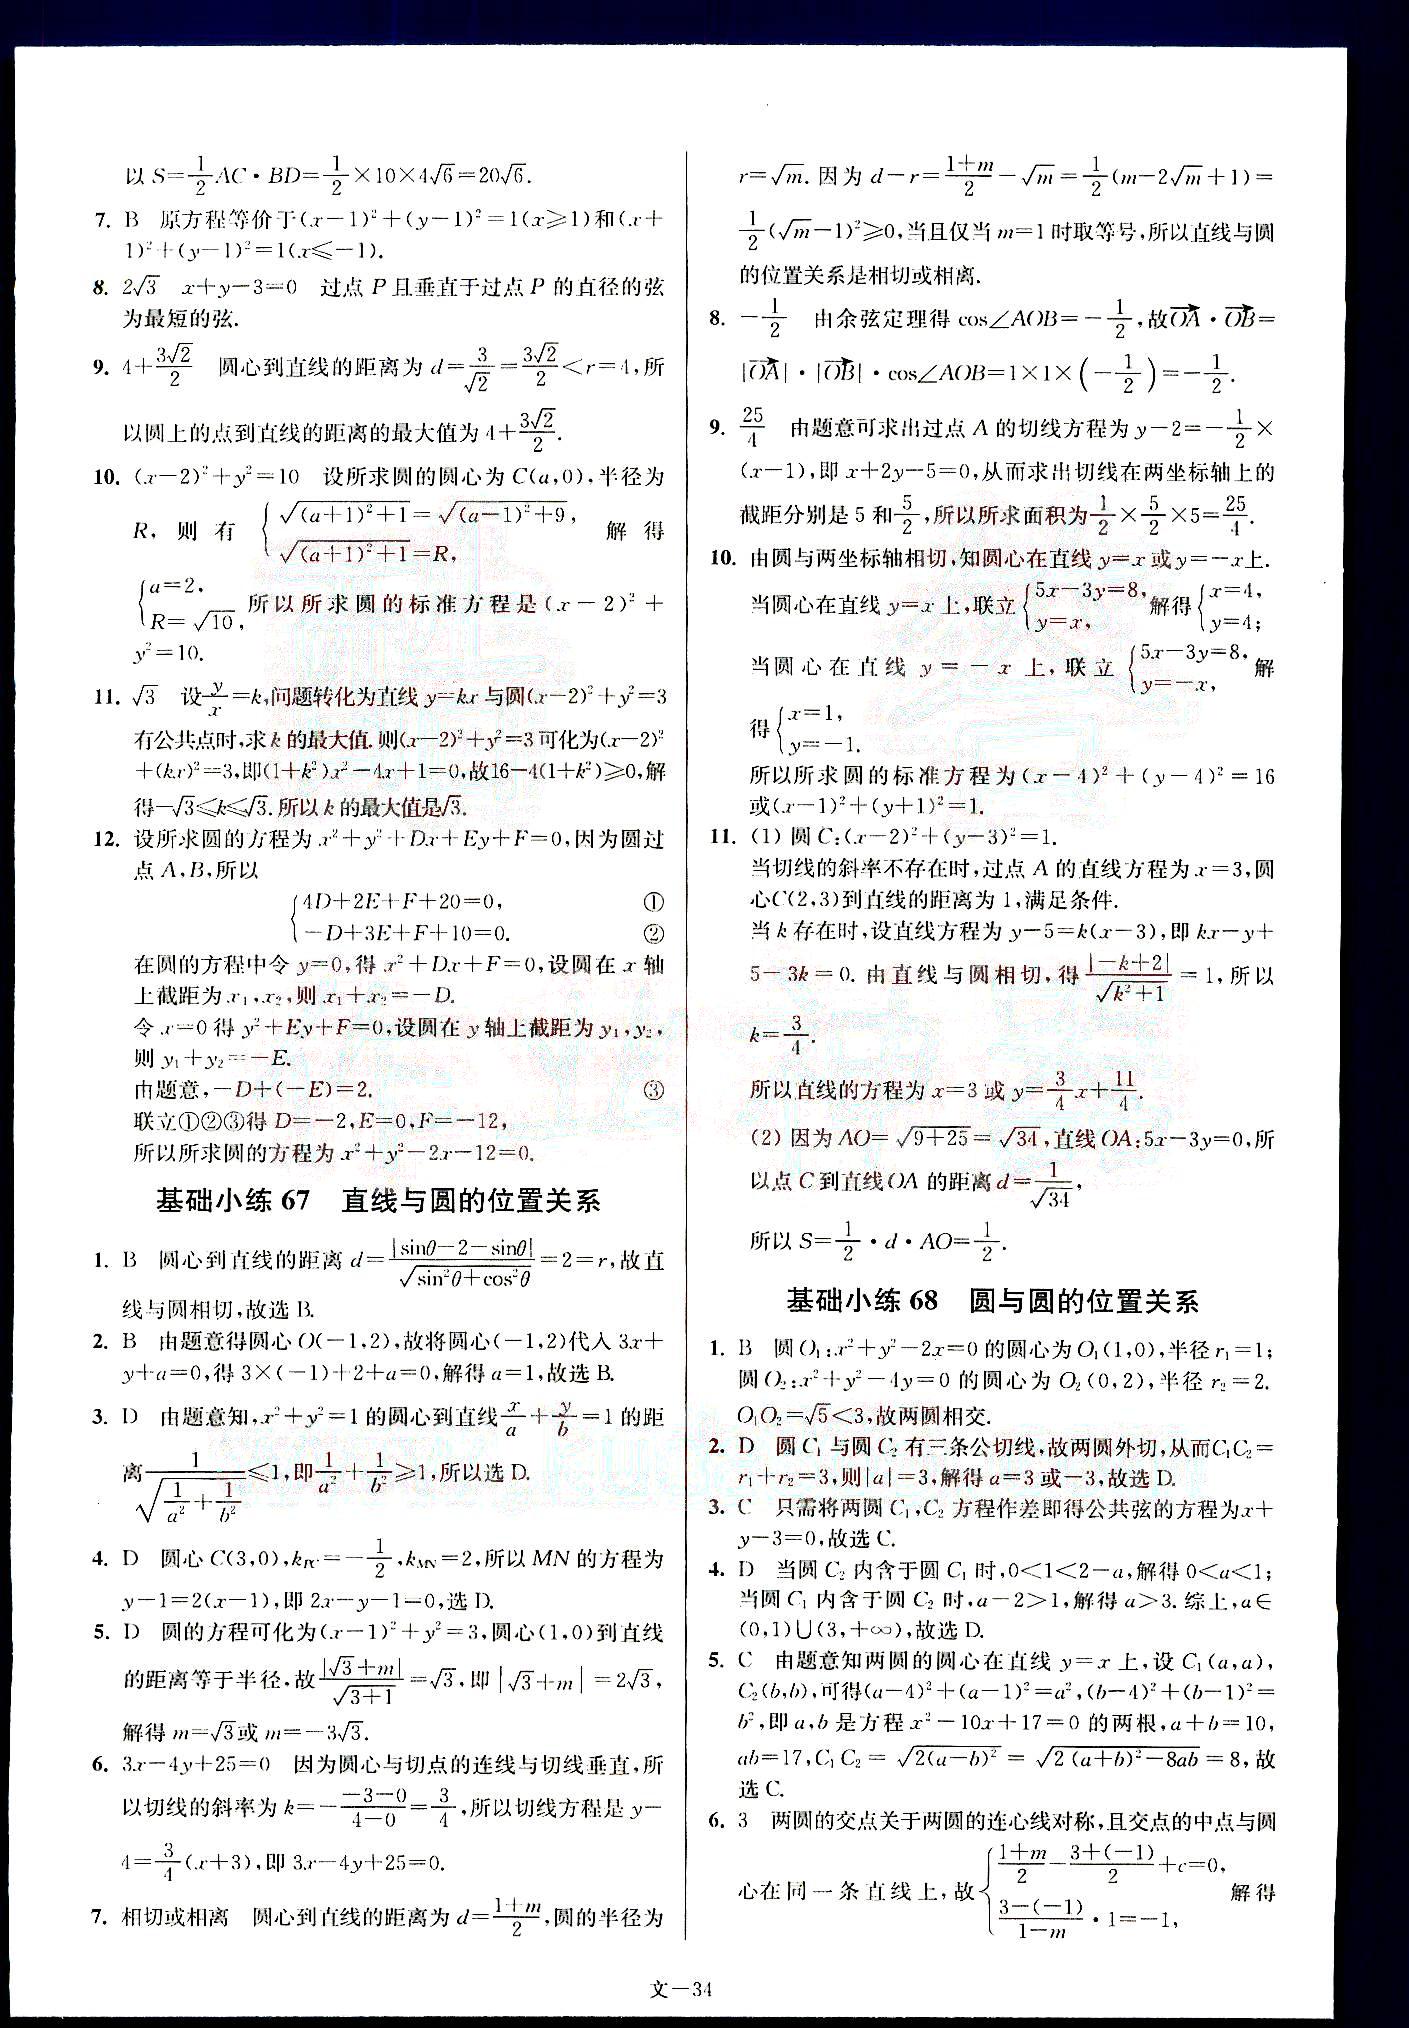 小题狂做-高考数学-文科-最基础篇南京大学出版社 第7部分 [4]